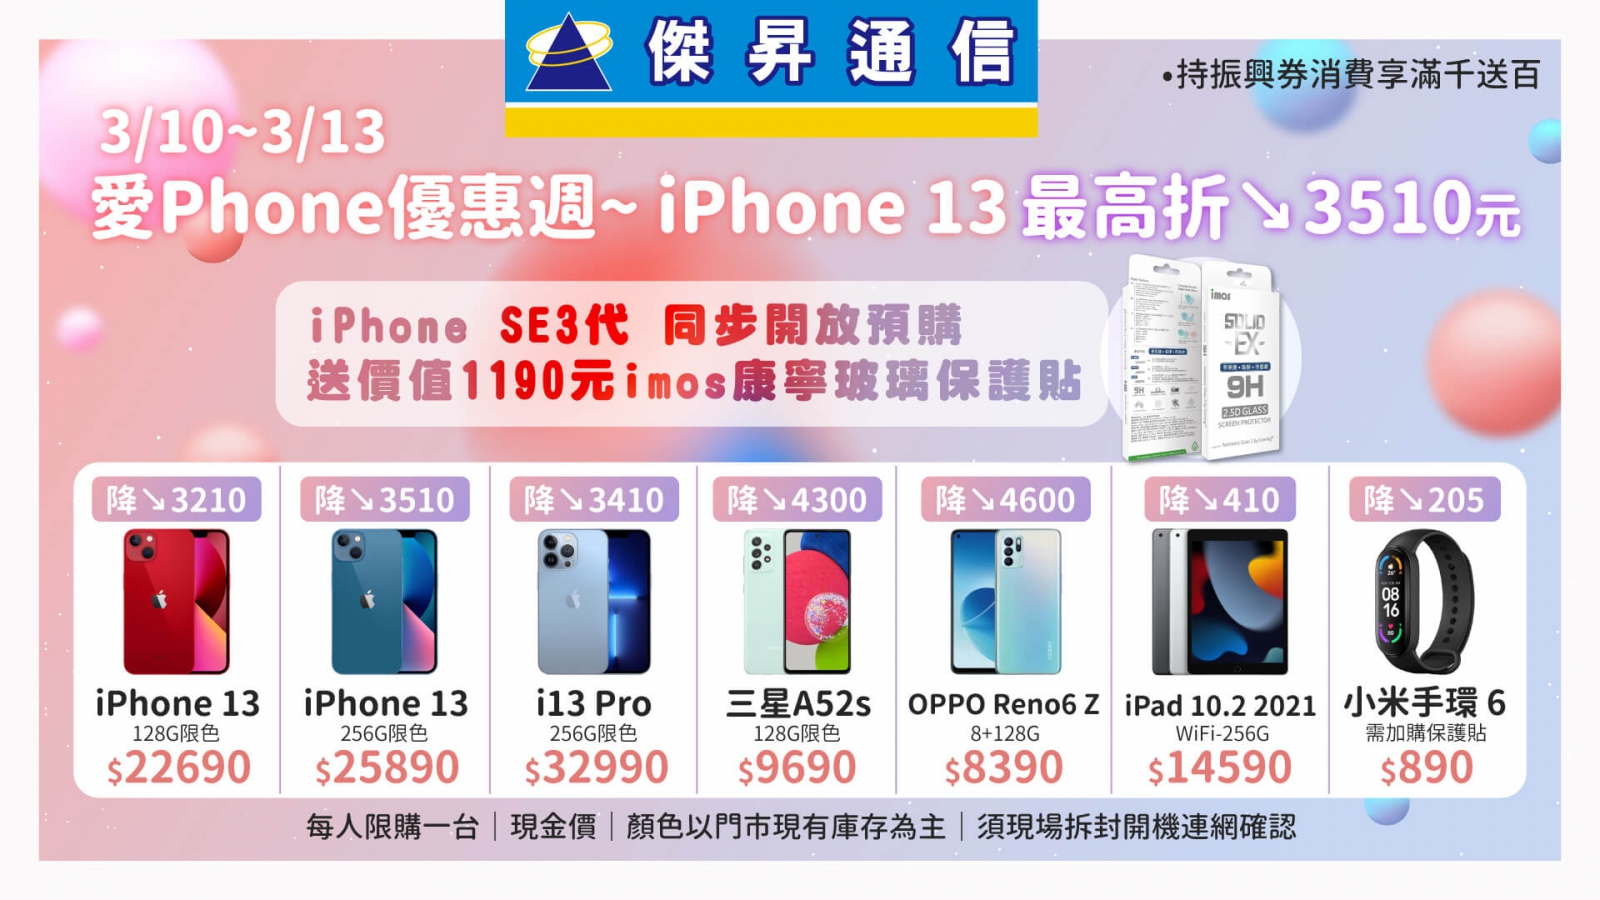 傑昇春季購物節起跑 預購iPhone SE送保貼、品牌手機最高現省4千6